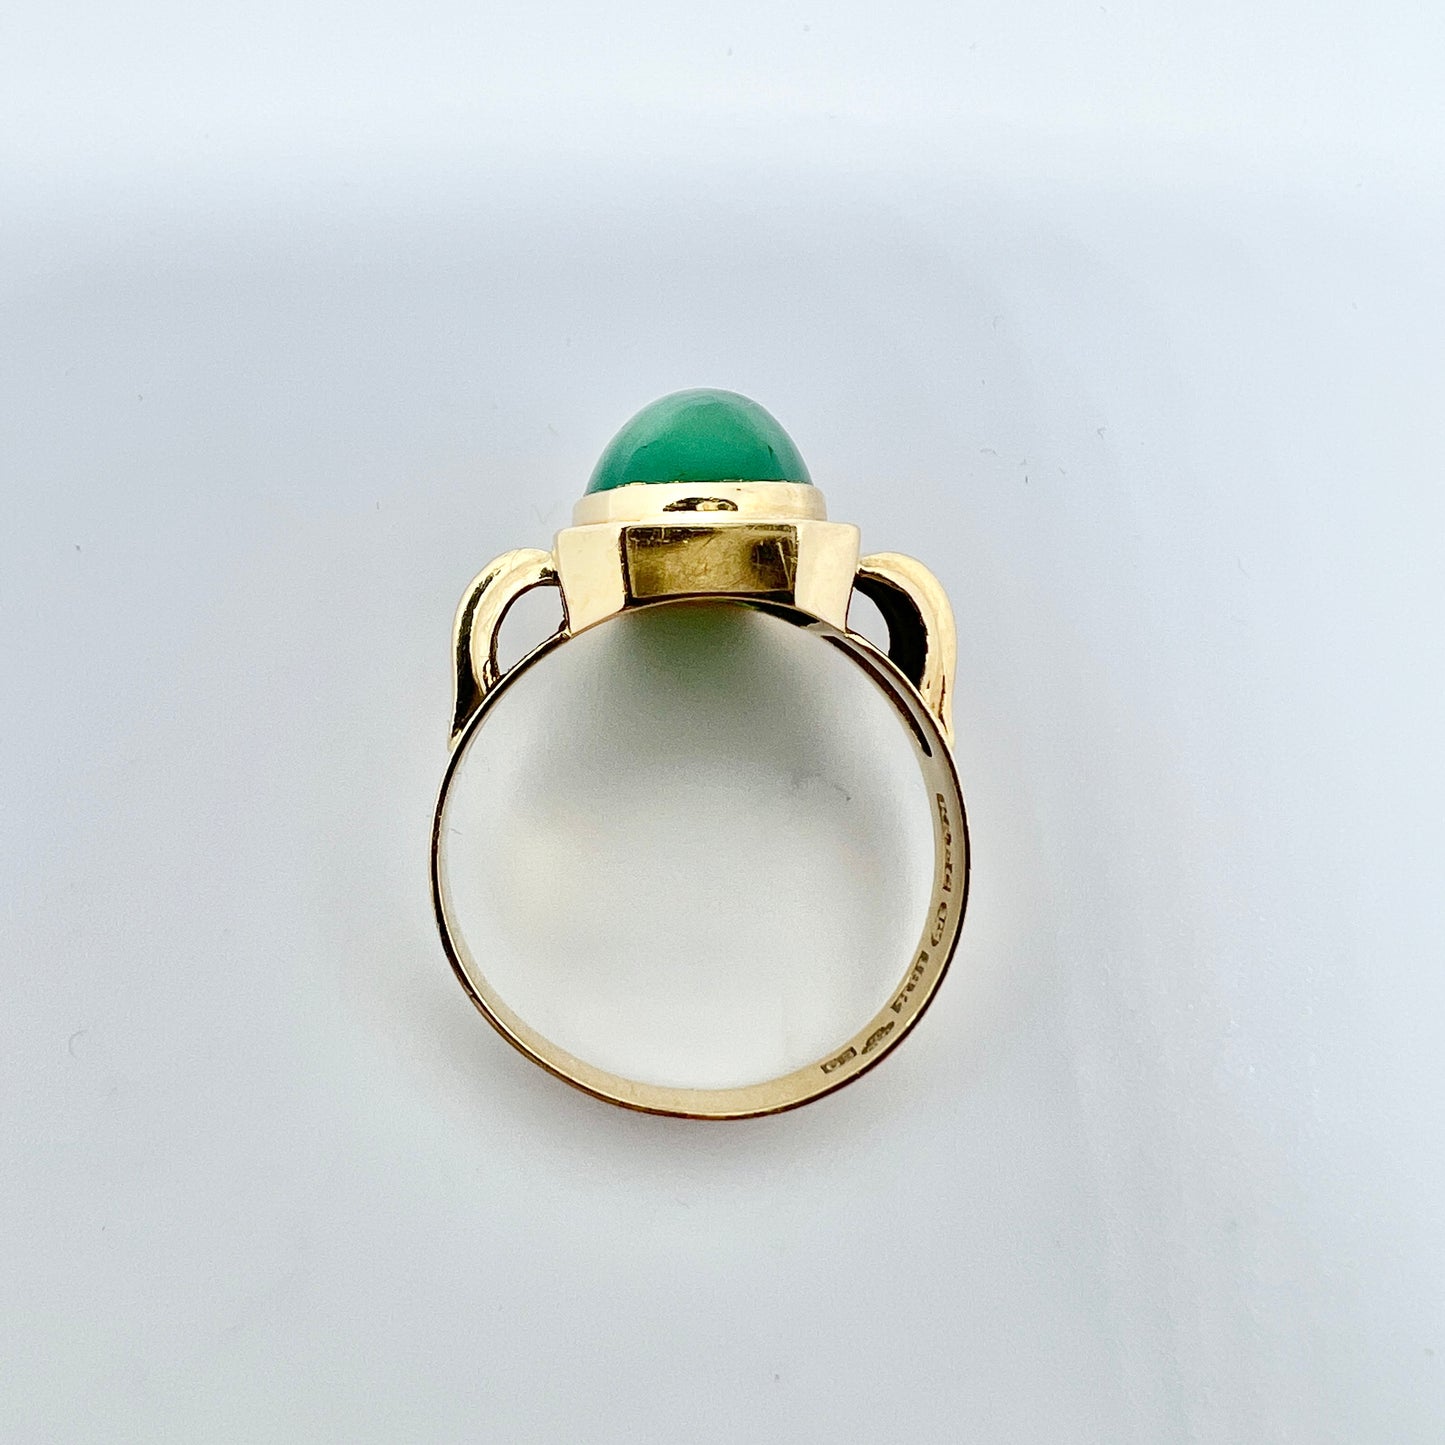 Ceson, Sweden 1955. Vintage 18k Gold Green Chrysoprase Ring